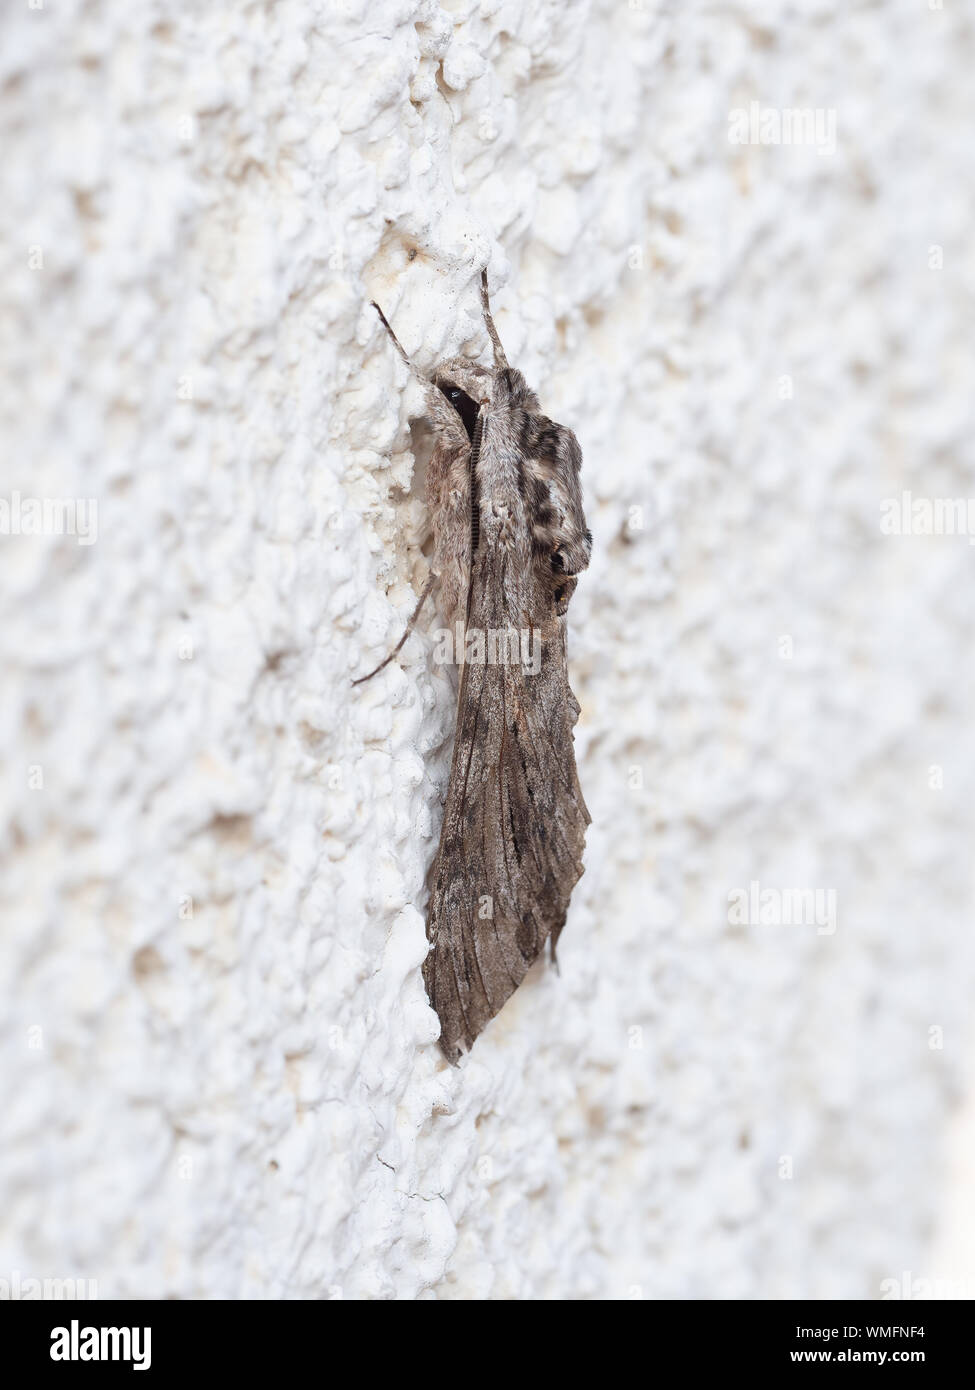 Espèce, vue de côté. Agrius convolvuli, le convolvulus hawk-moth. Vivant, sur le mur. Banque D'Images